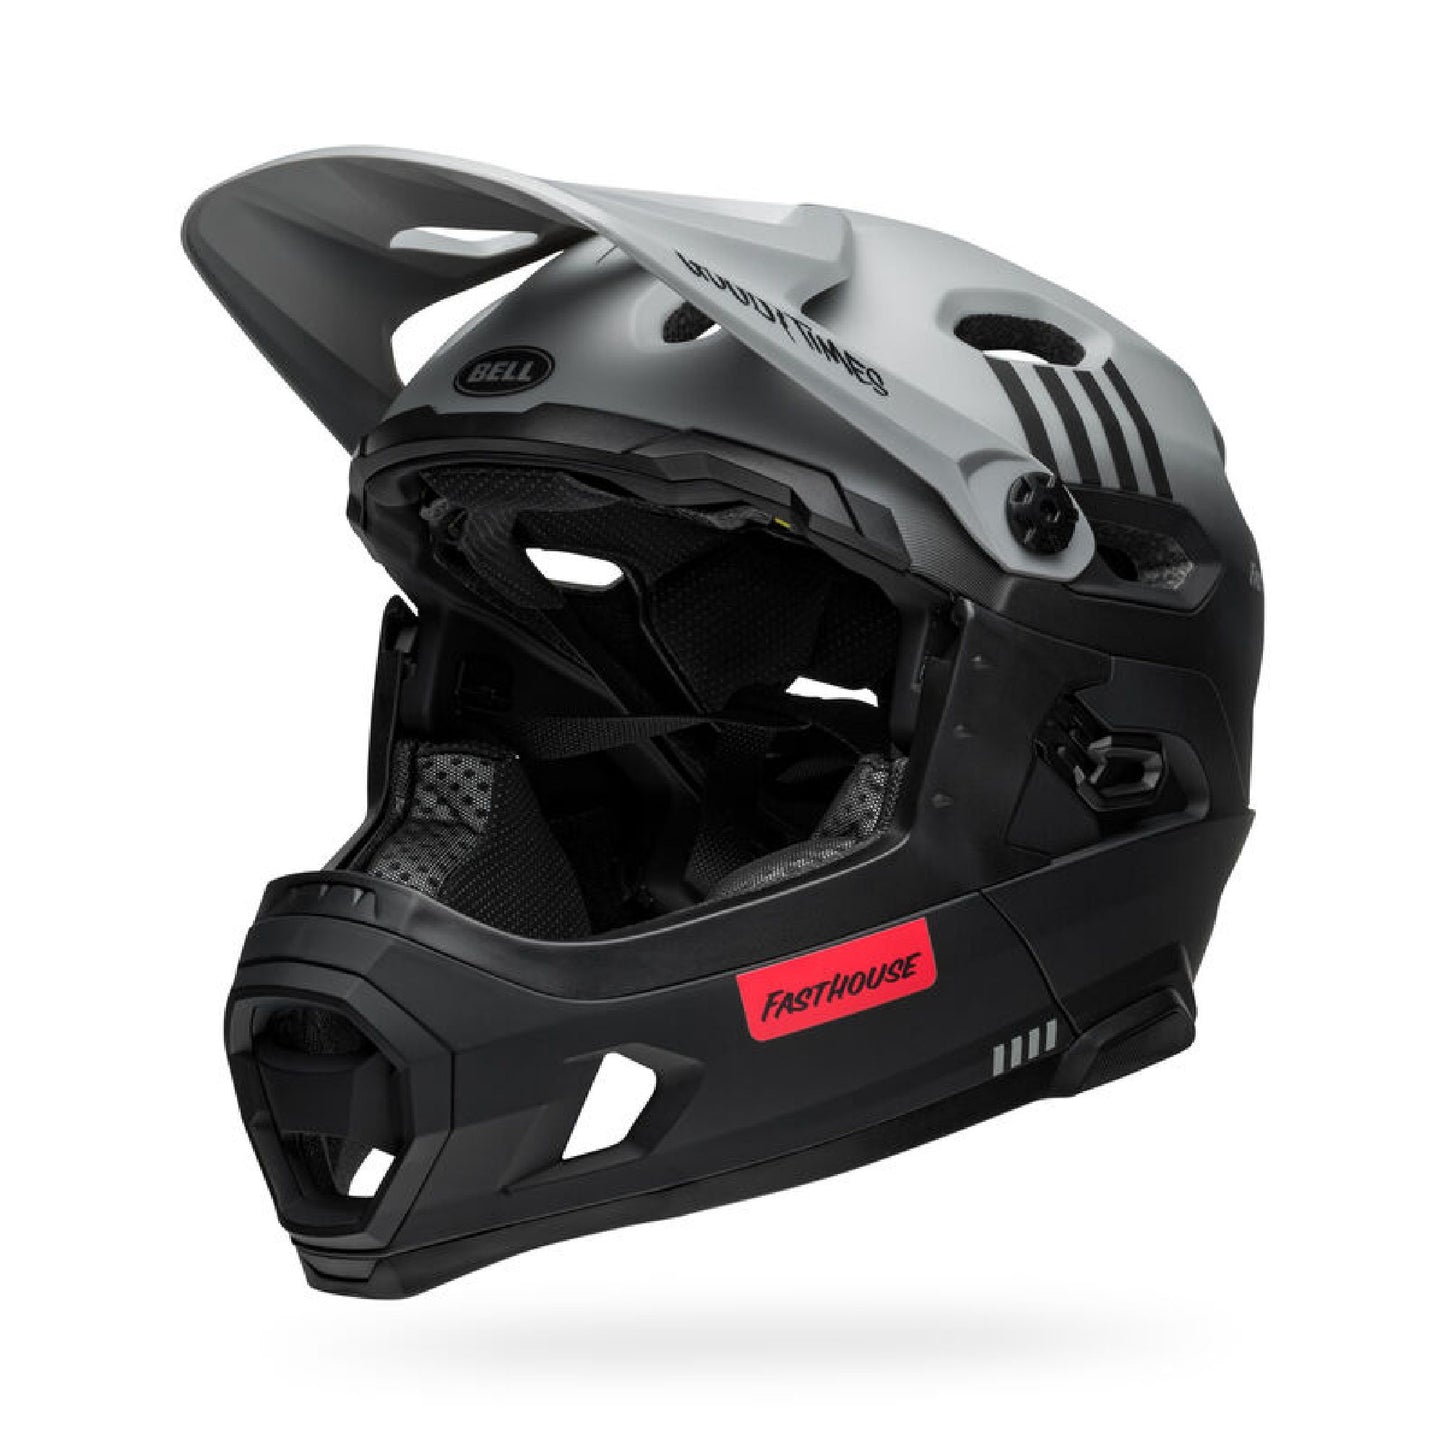 Bell Super DH Spherical Helmet Fasthouse Matte Gray/Black Bike Helmets